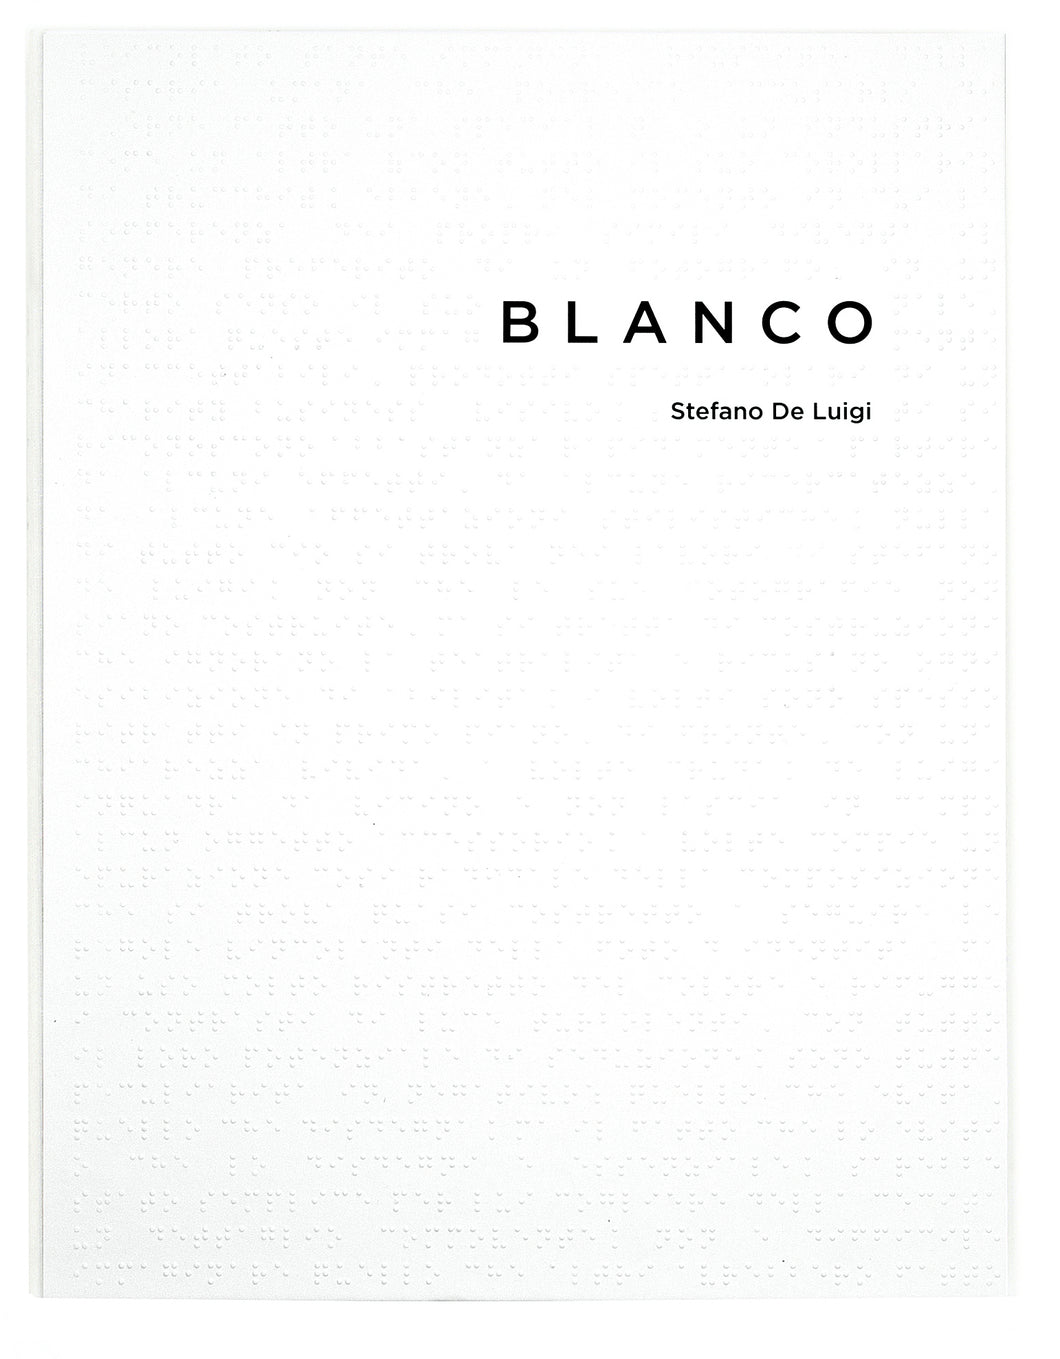 BLANCO by Stefano de Luigi